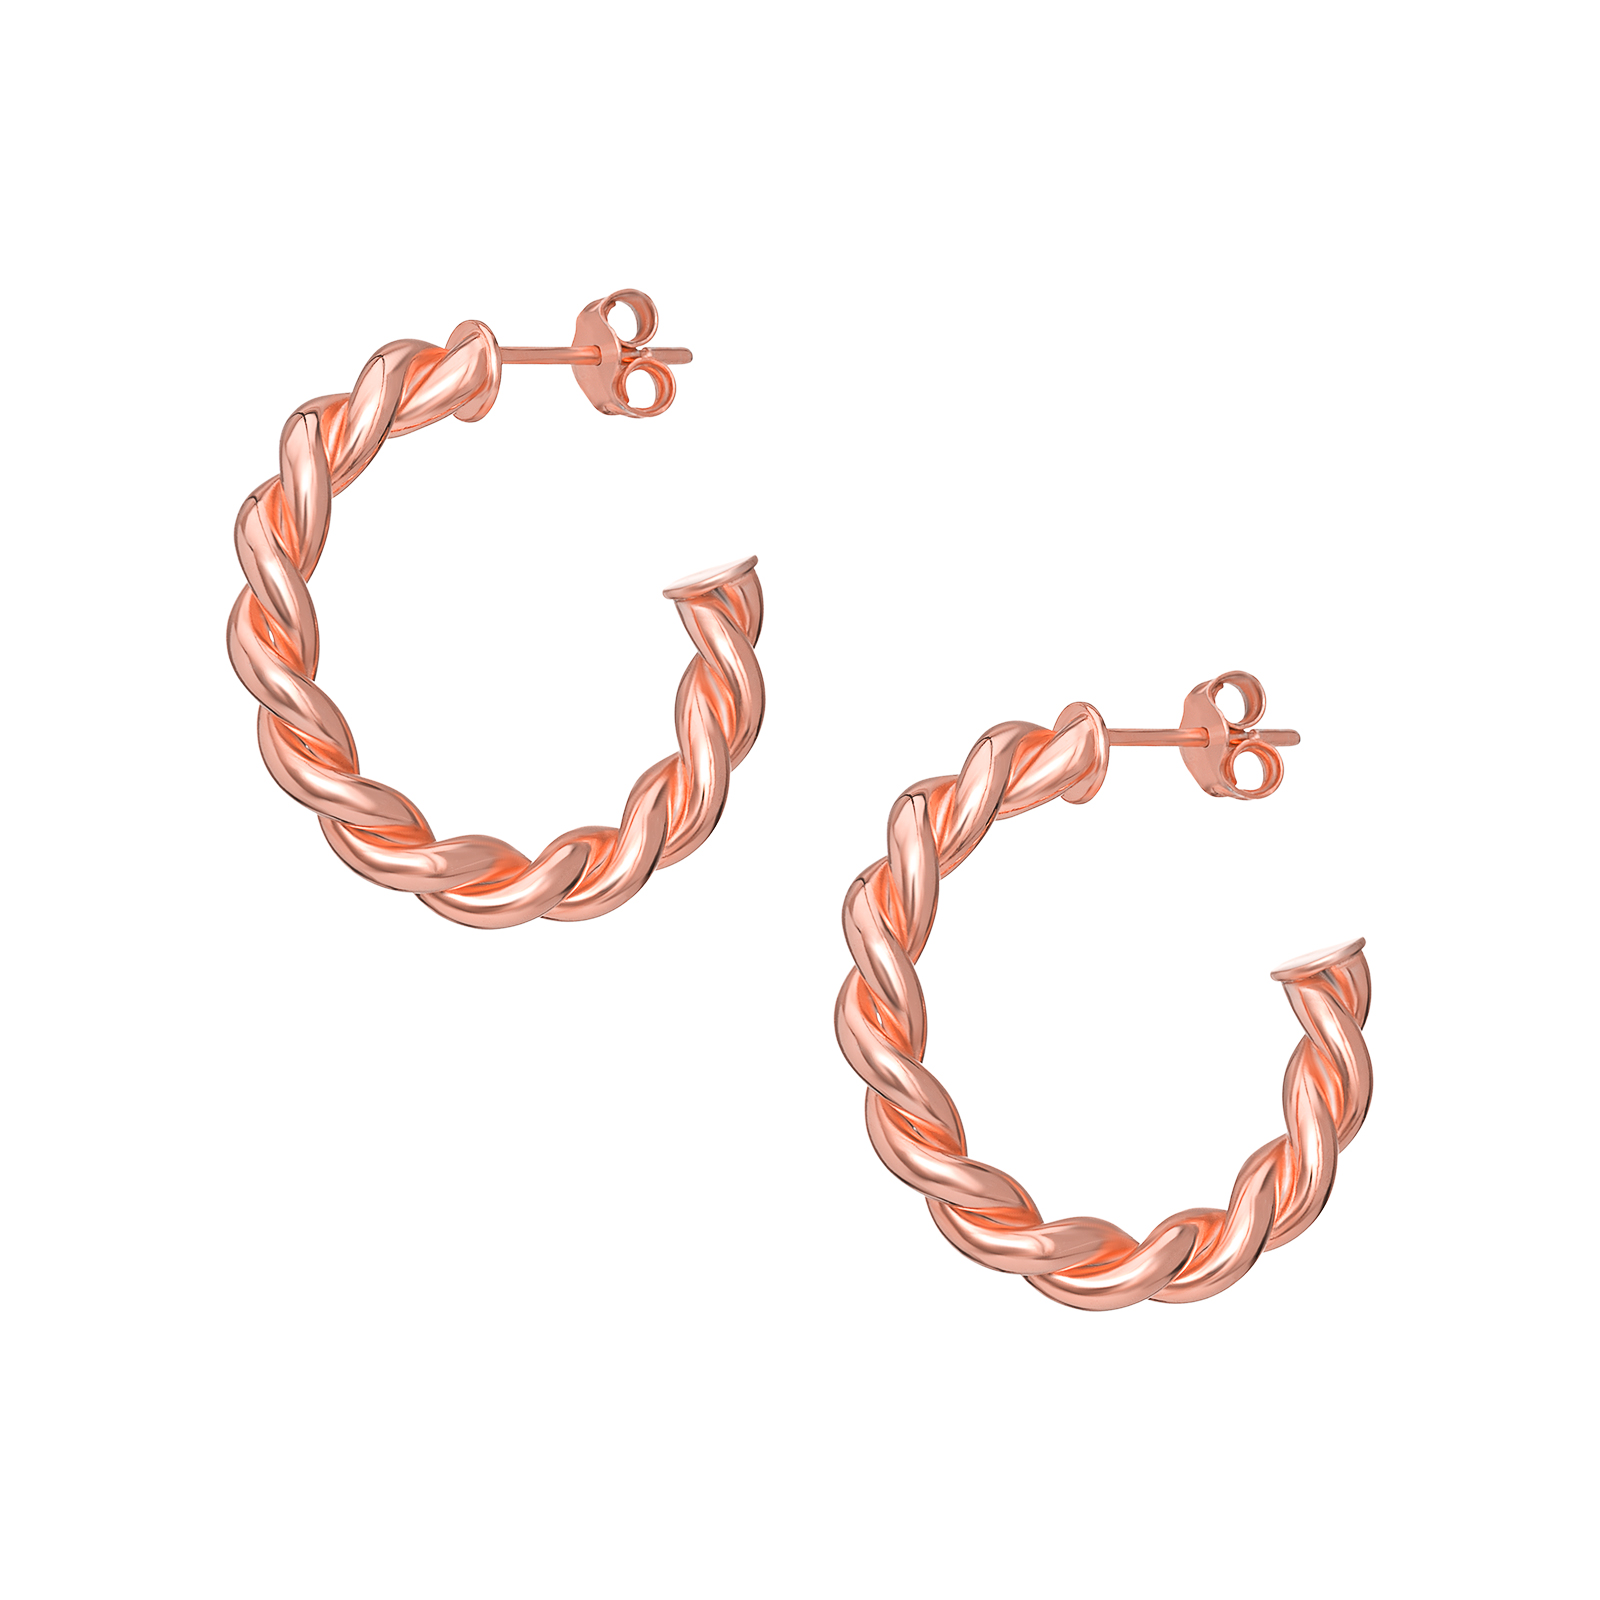 S/S Rose Gold Plated Twist Hoop Earrings